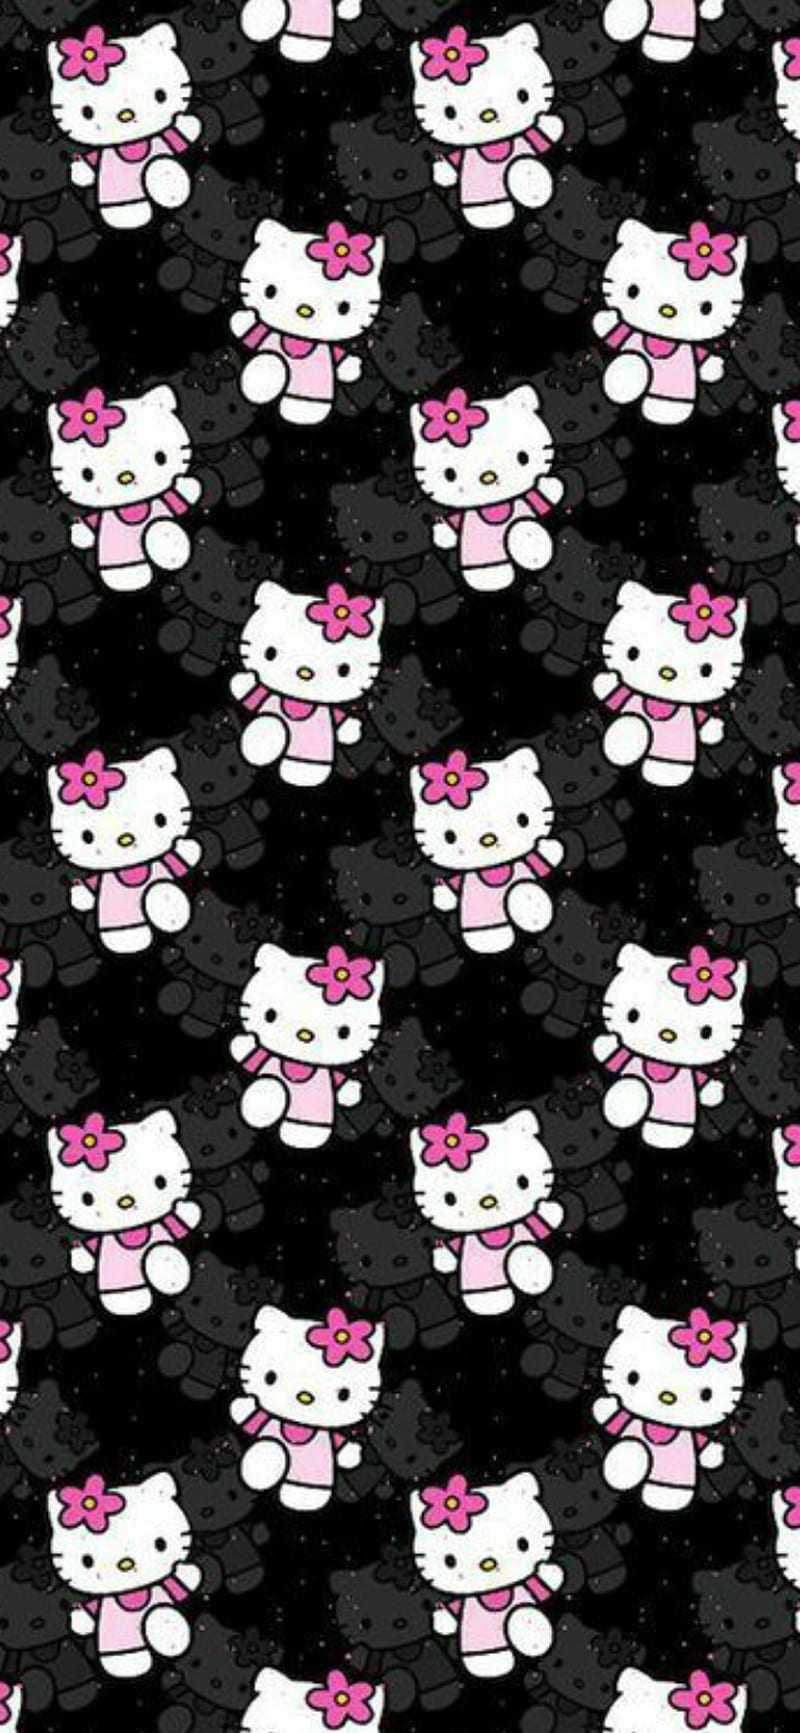 Hello kitty Wallpaper iPhone  Hello kitty backgrounds Hello kitty pictures  Hello kitty printables